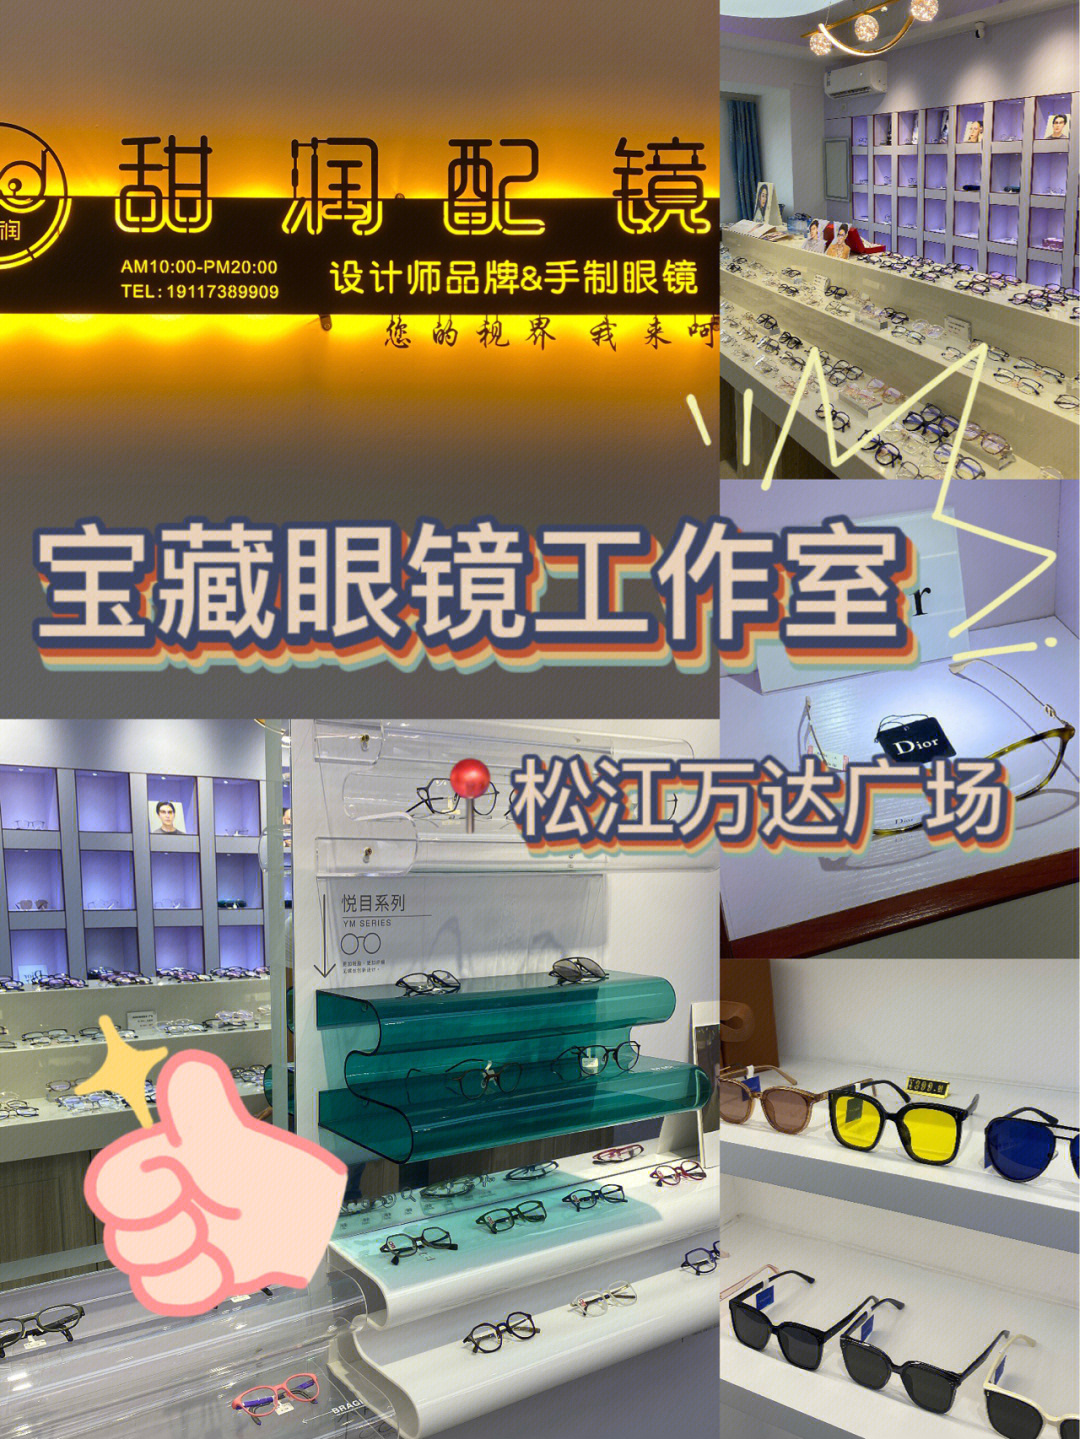 上海松江万达广场里的宝藏眼镜工作室97